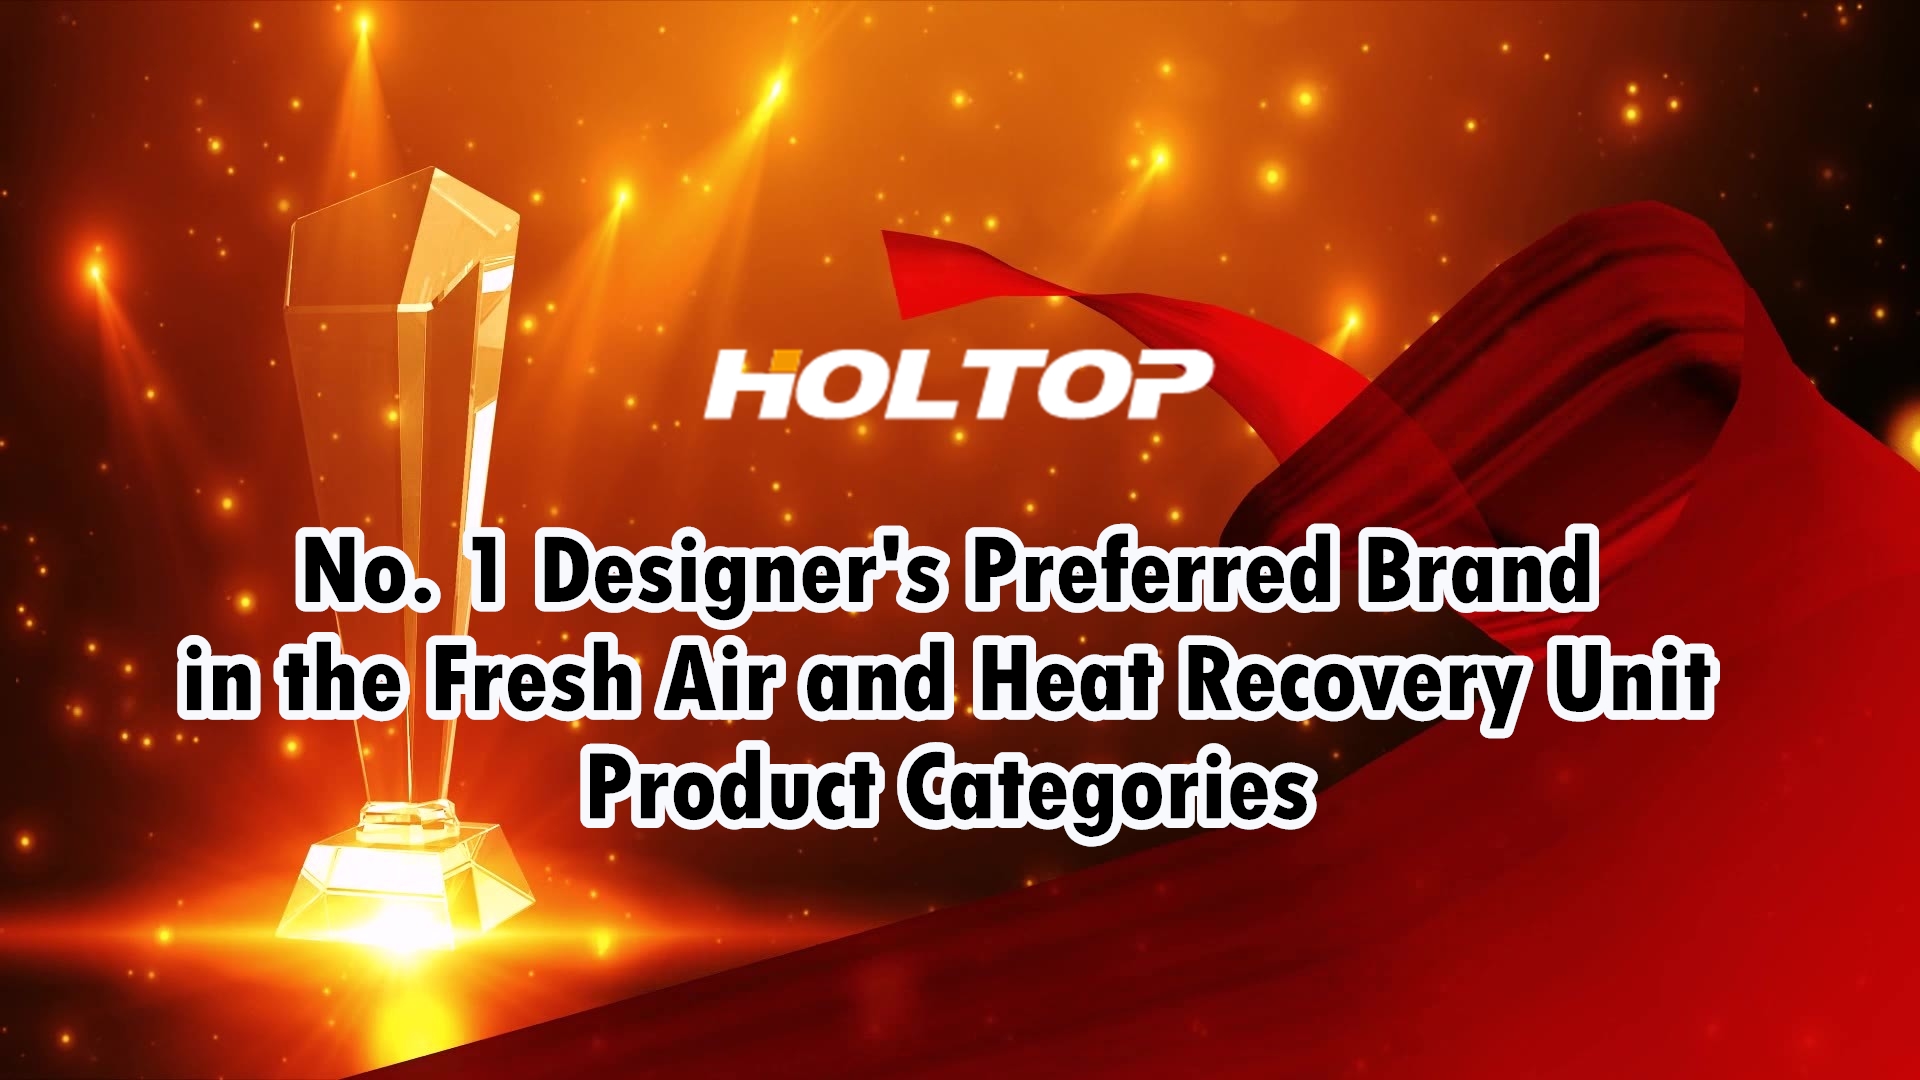 HOLTOP é a marca preferida do designer nº 1 nas categorias de produtos de unidade de ar fresco e recuperação de calor no mercado chinês